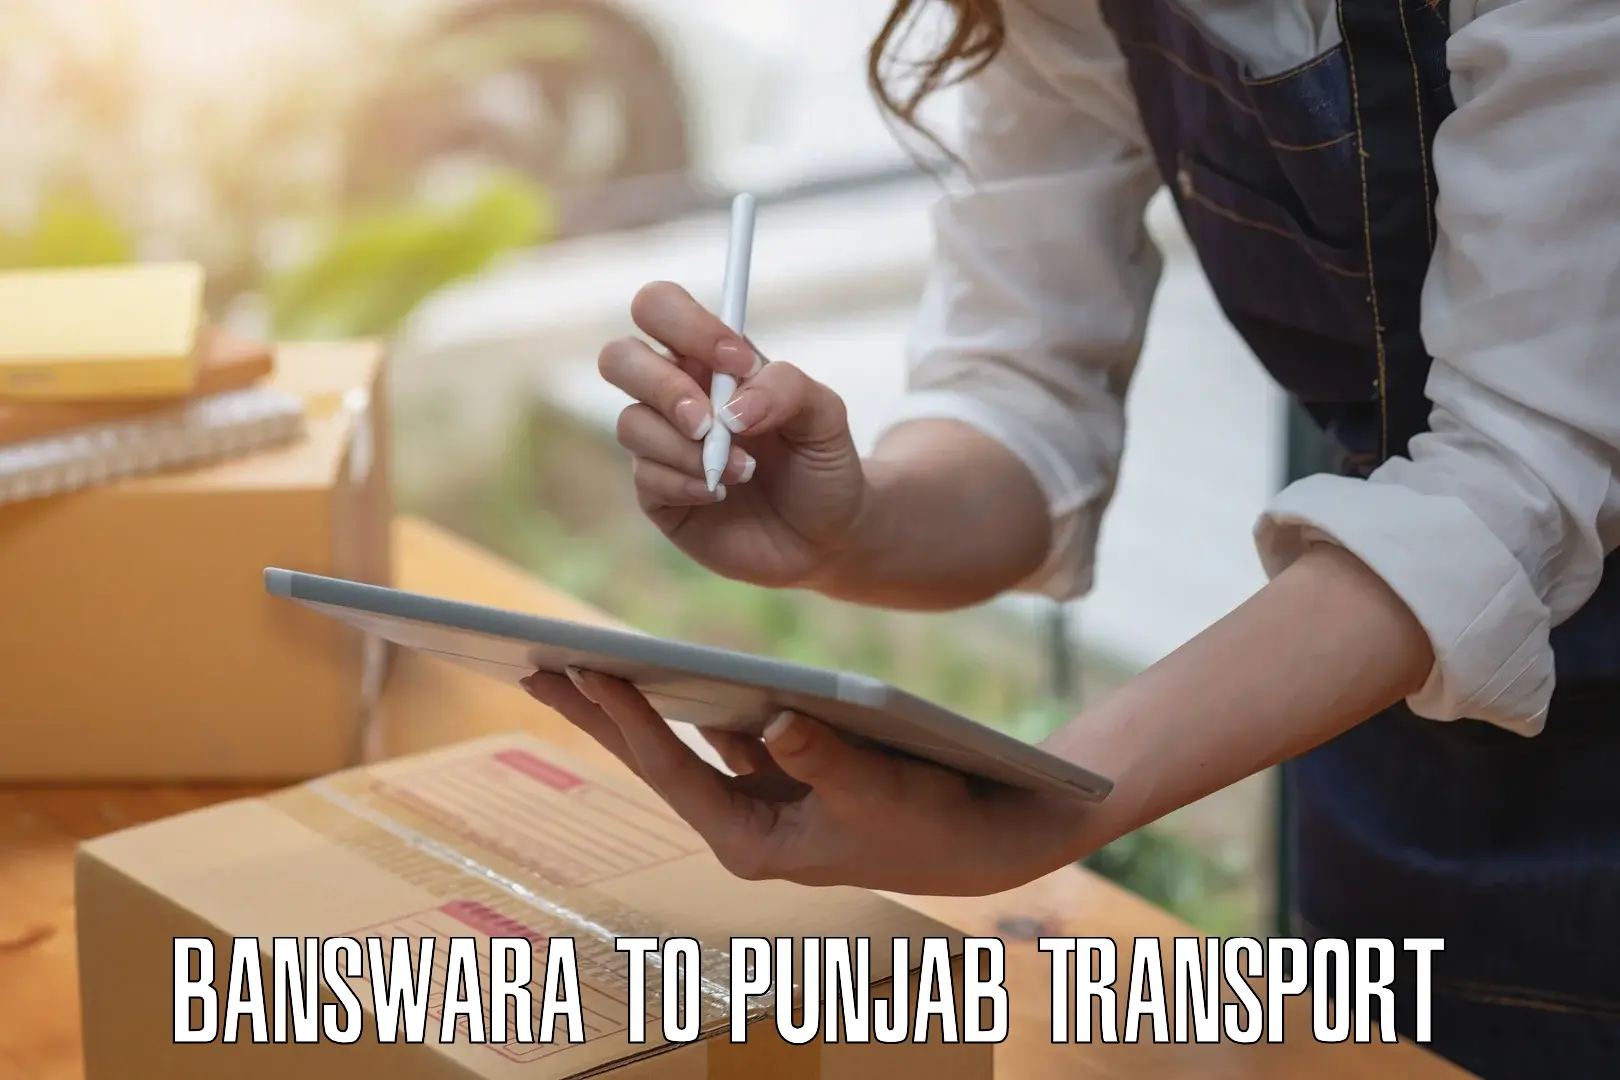 Container transportation services Banswara to Punjab